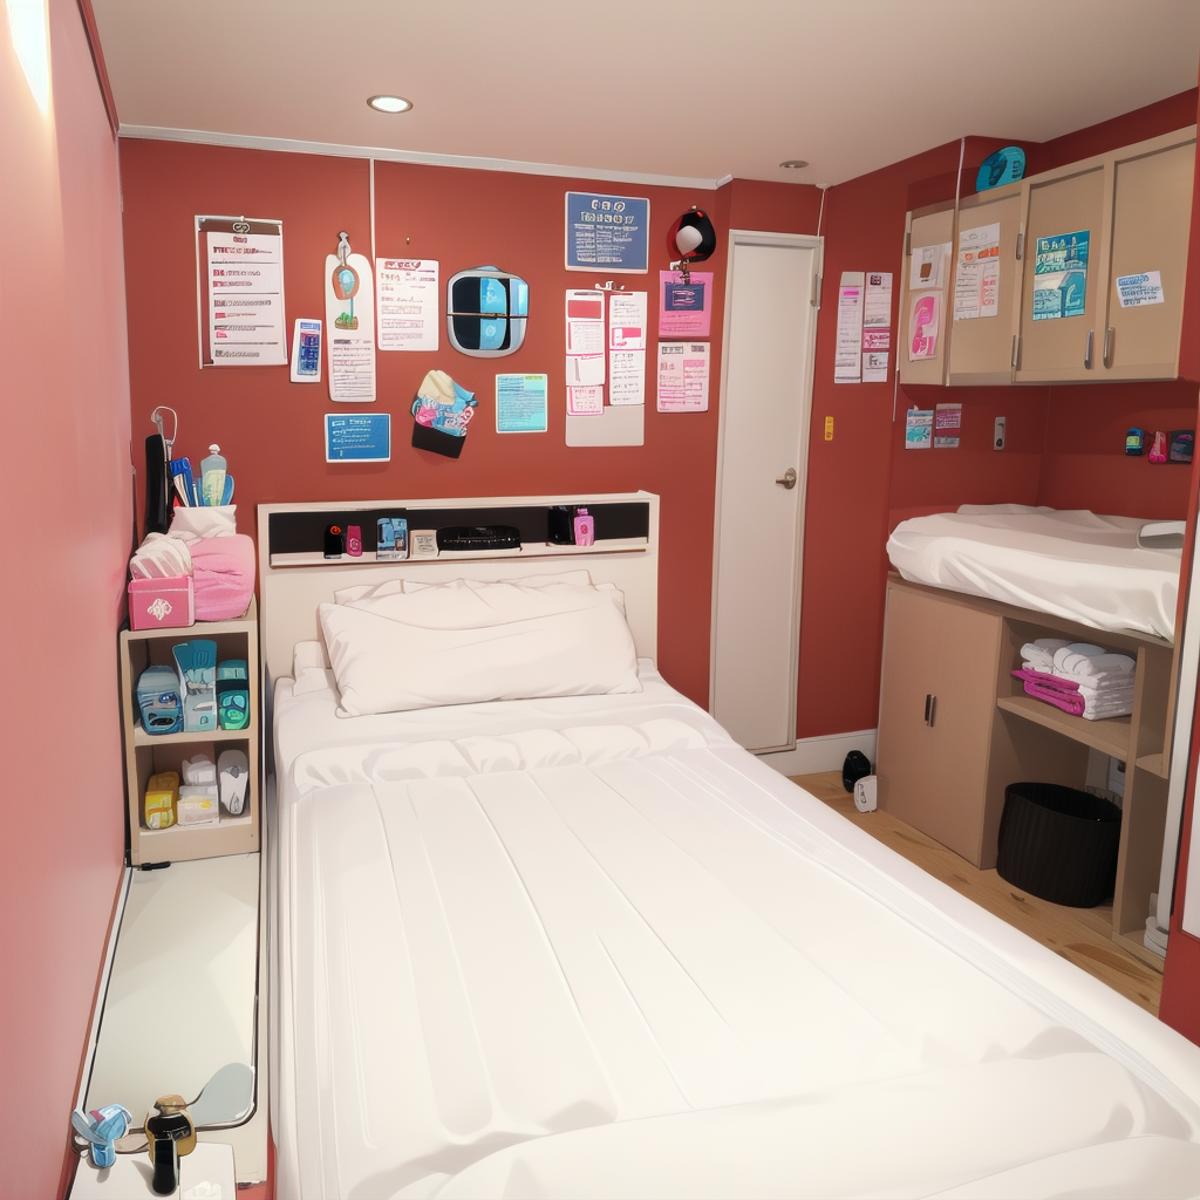 ベッドがあるだけの小さな部屋 / hakohel SD15 image by swingwings